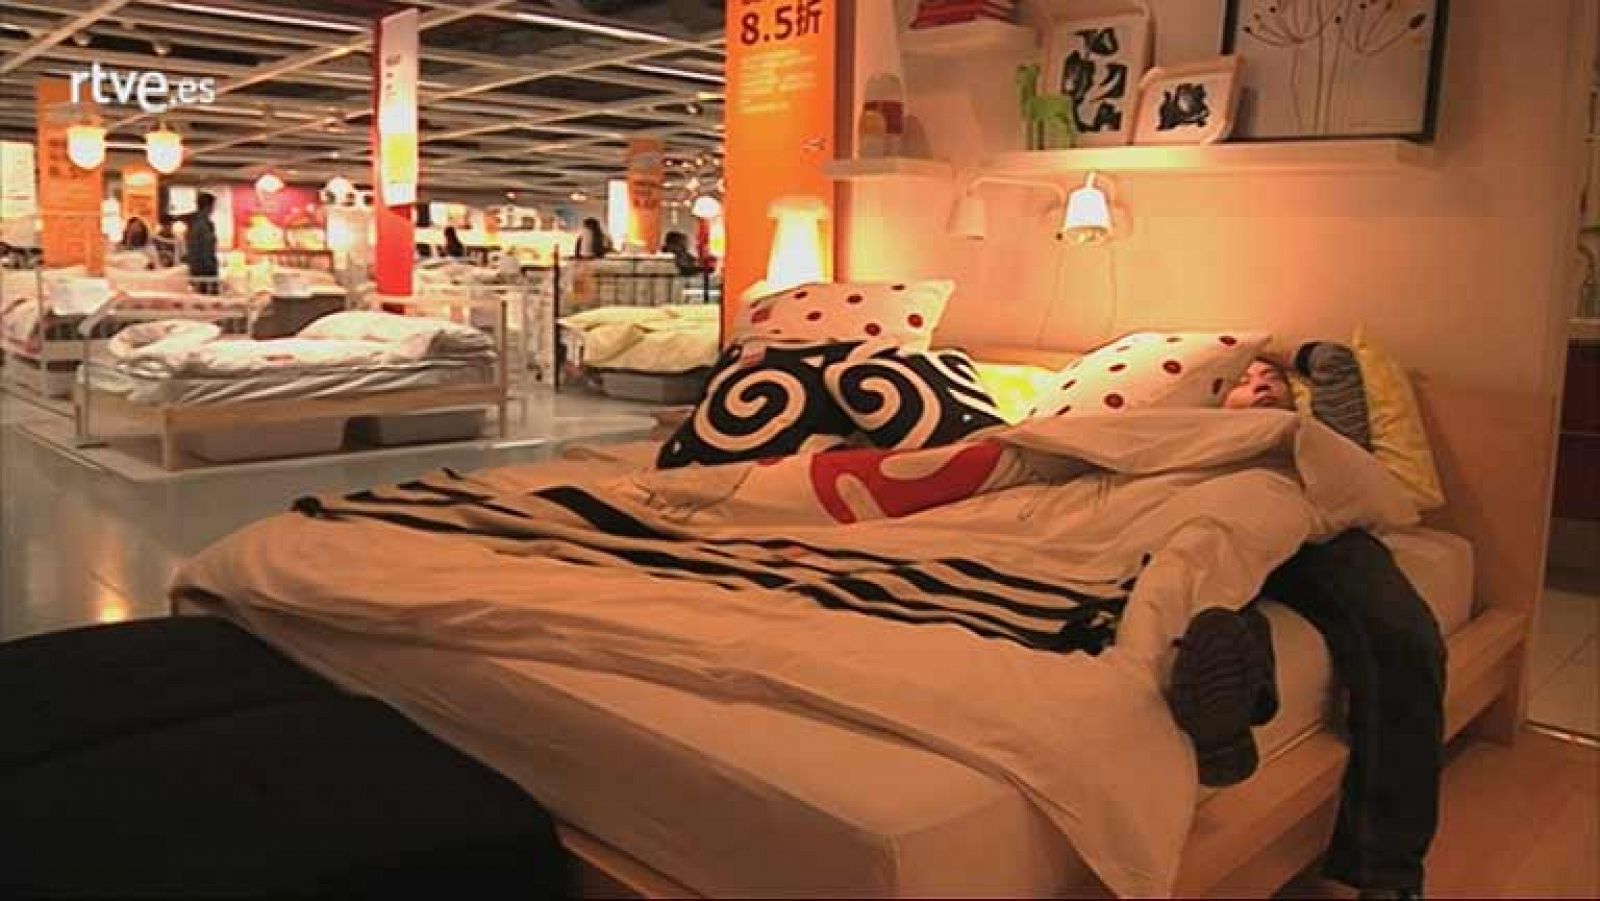  En China, los clientes de ese país aplican al pie de la letra en algunas tiendas lo de sentirse como en su propia casa. Y, si no, fíjense en cómo invierten su tiempo libre algunos chinos en Ikea. 